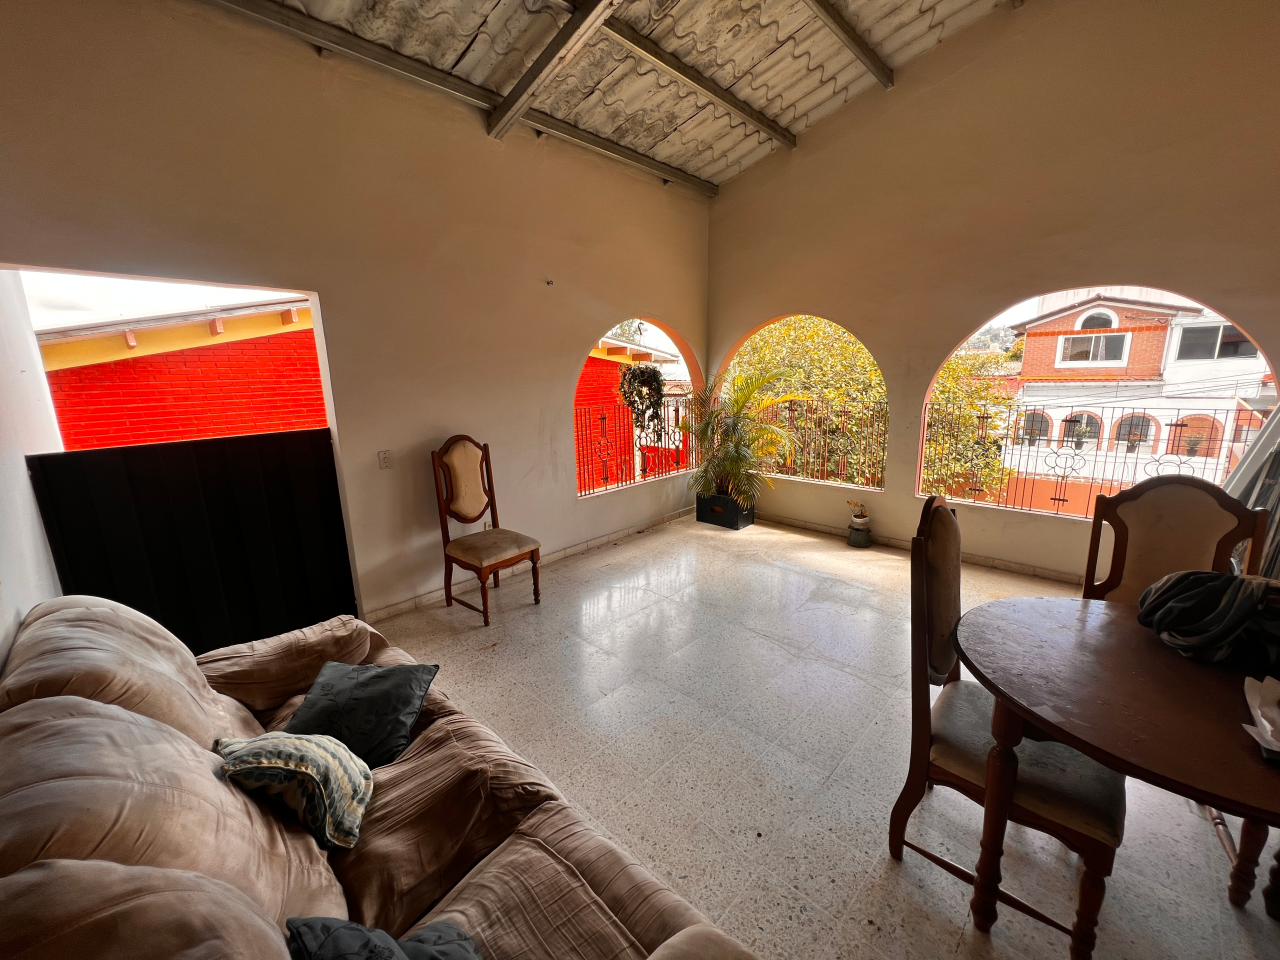 Terraza techada con un sofá grande, un comedor de madera de forma circular con 4 sillas y vista de la residencial Centroamérica.